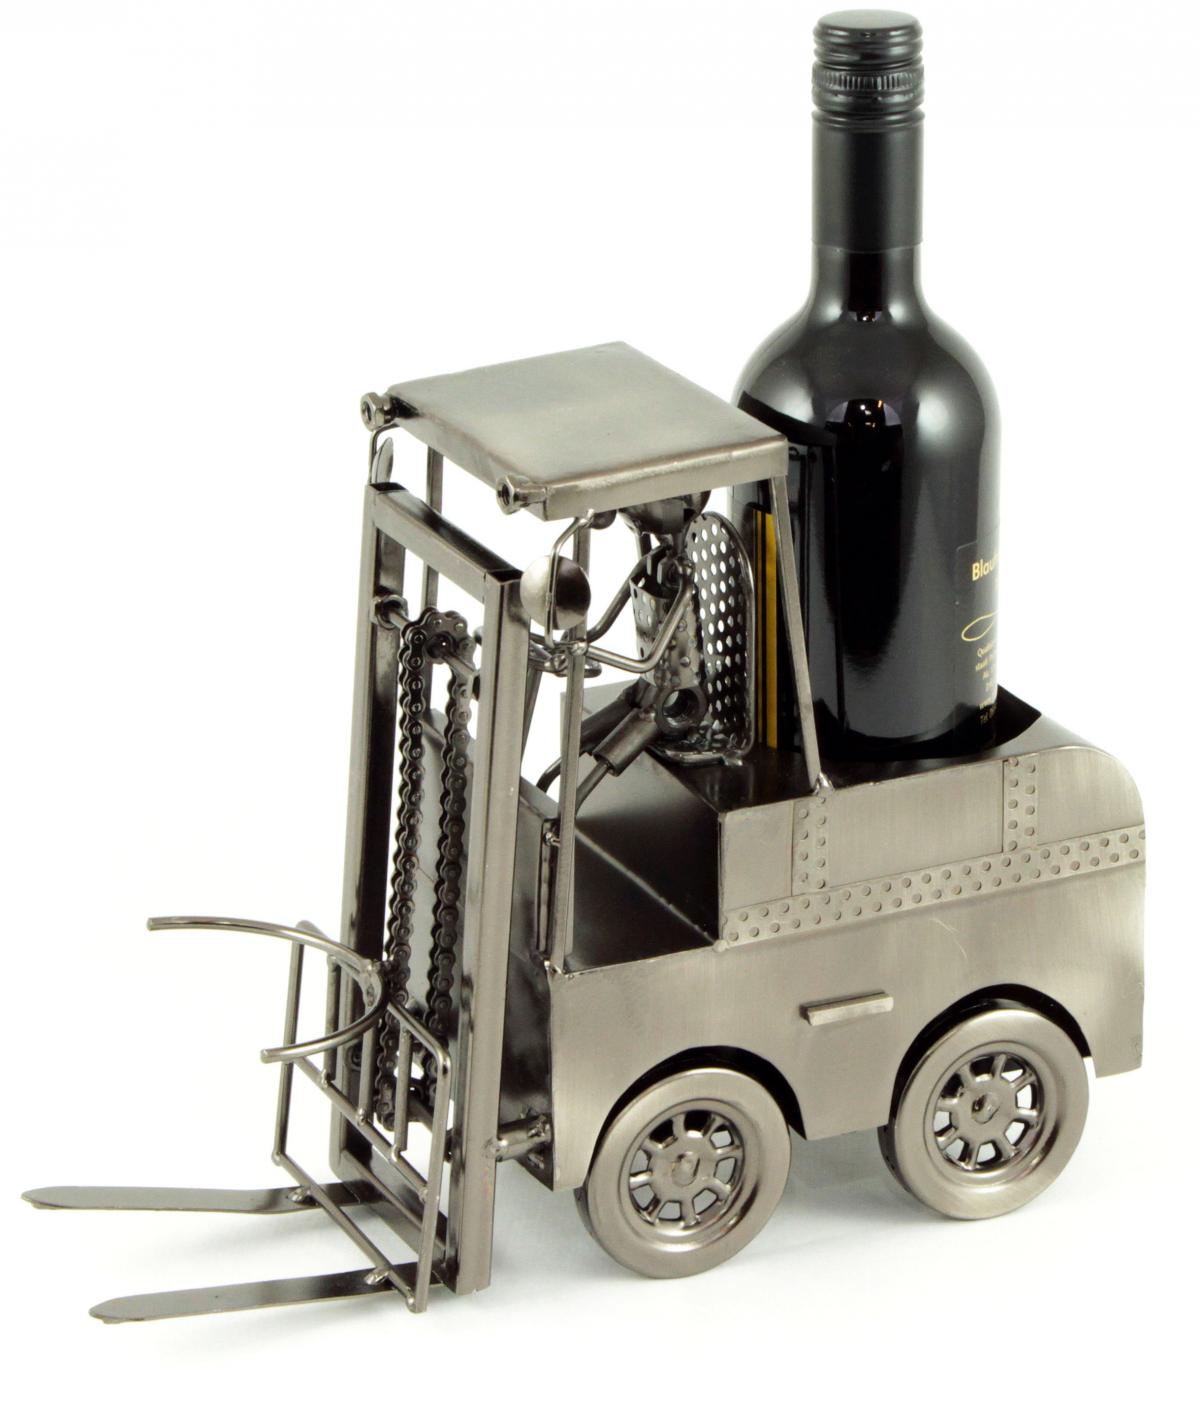 Preissturz » Flaschenhalter Metall Gabelstapler Stapler mit Fahrer  Flaschenständer